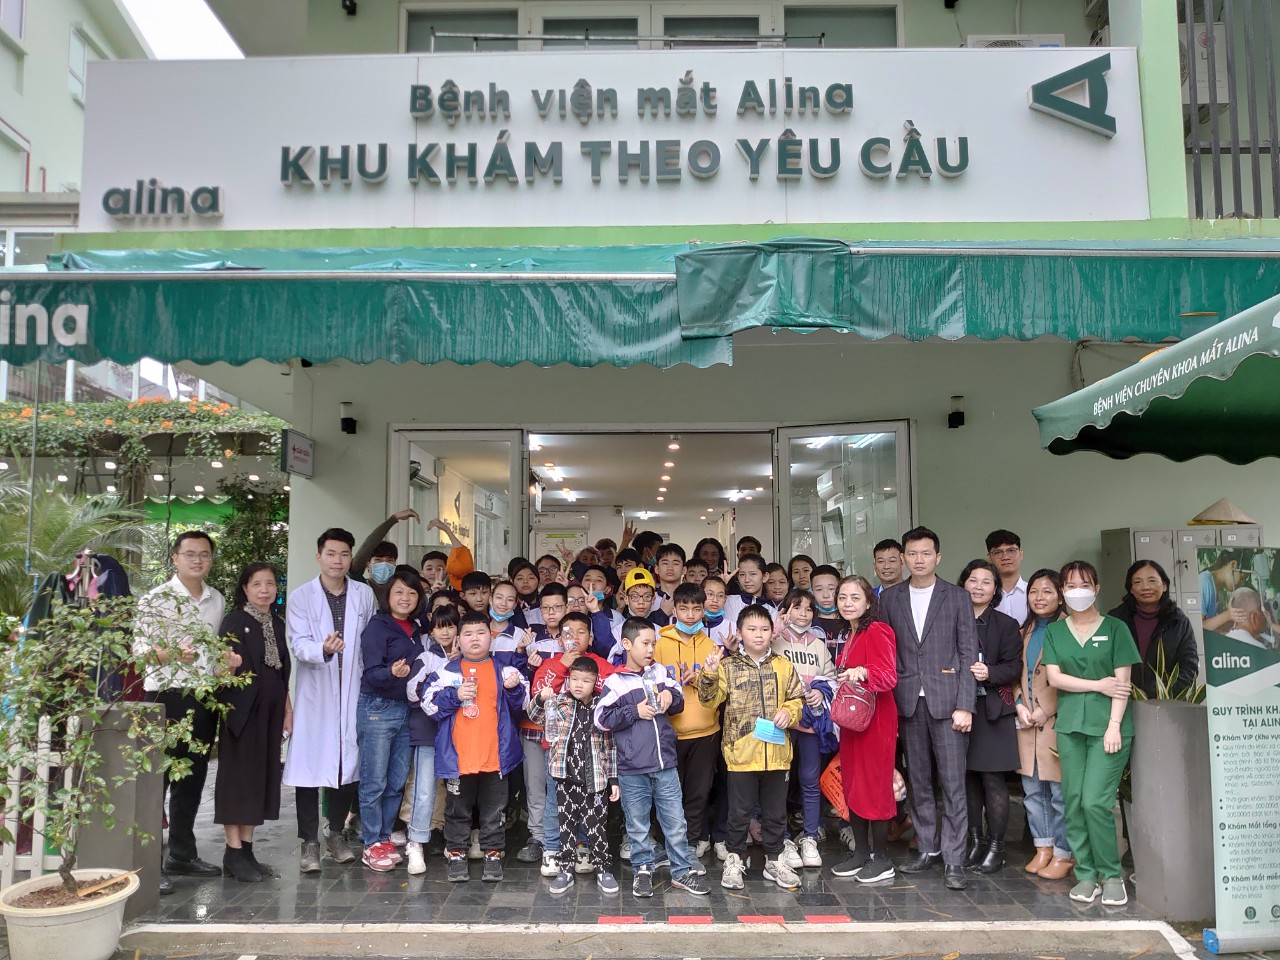 Học sinh trường PTCS dân lập dạy trẻ câm điếc Hà Nội đến khám tại Bệnh viện mắt Alina